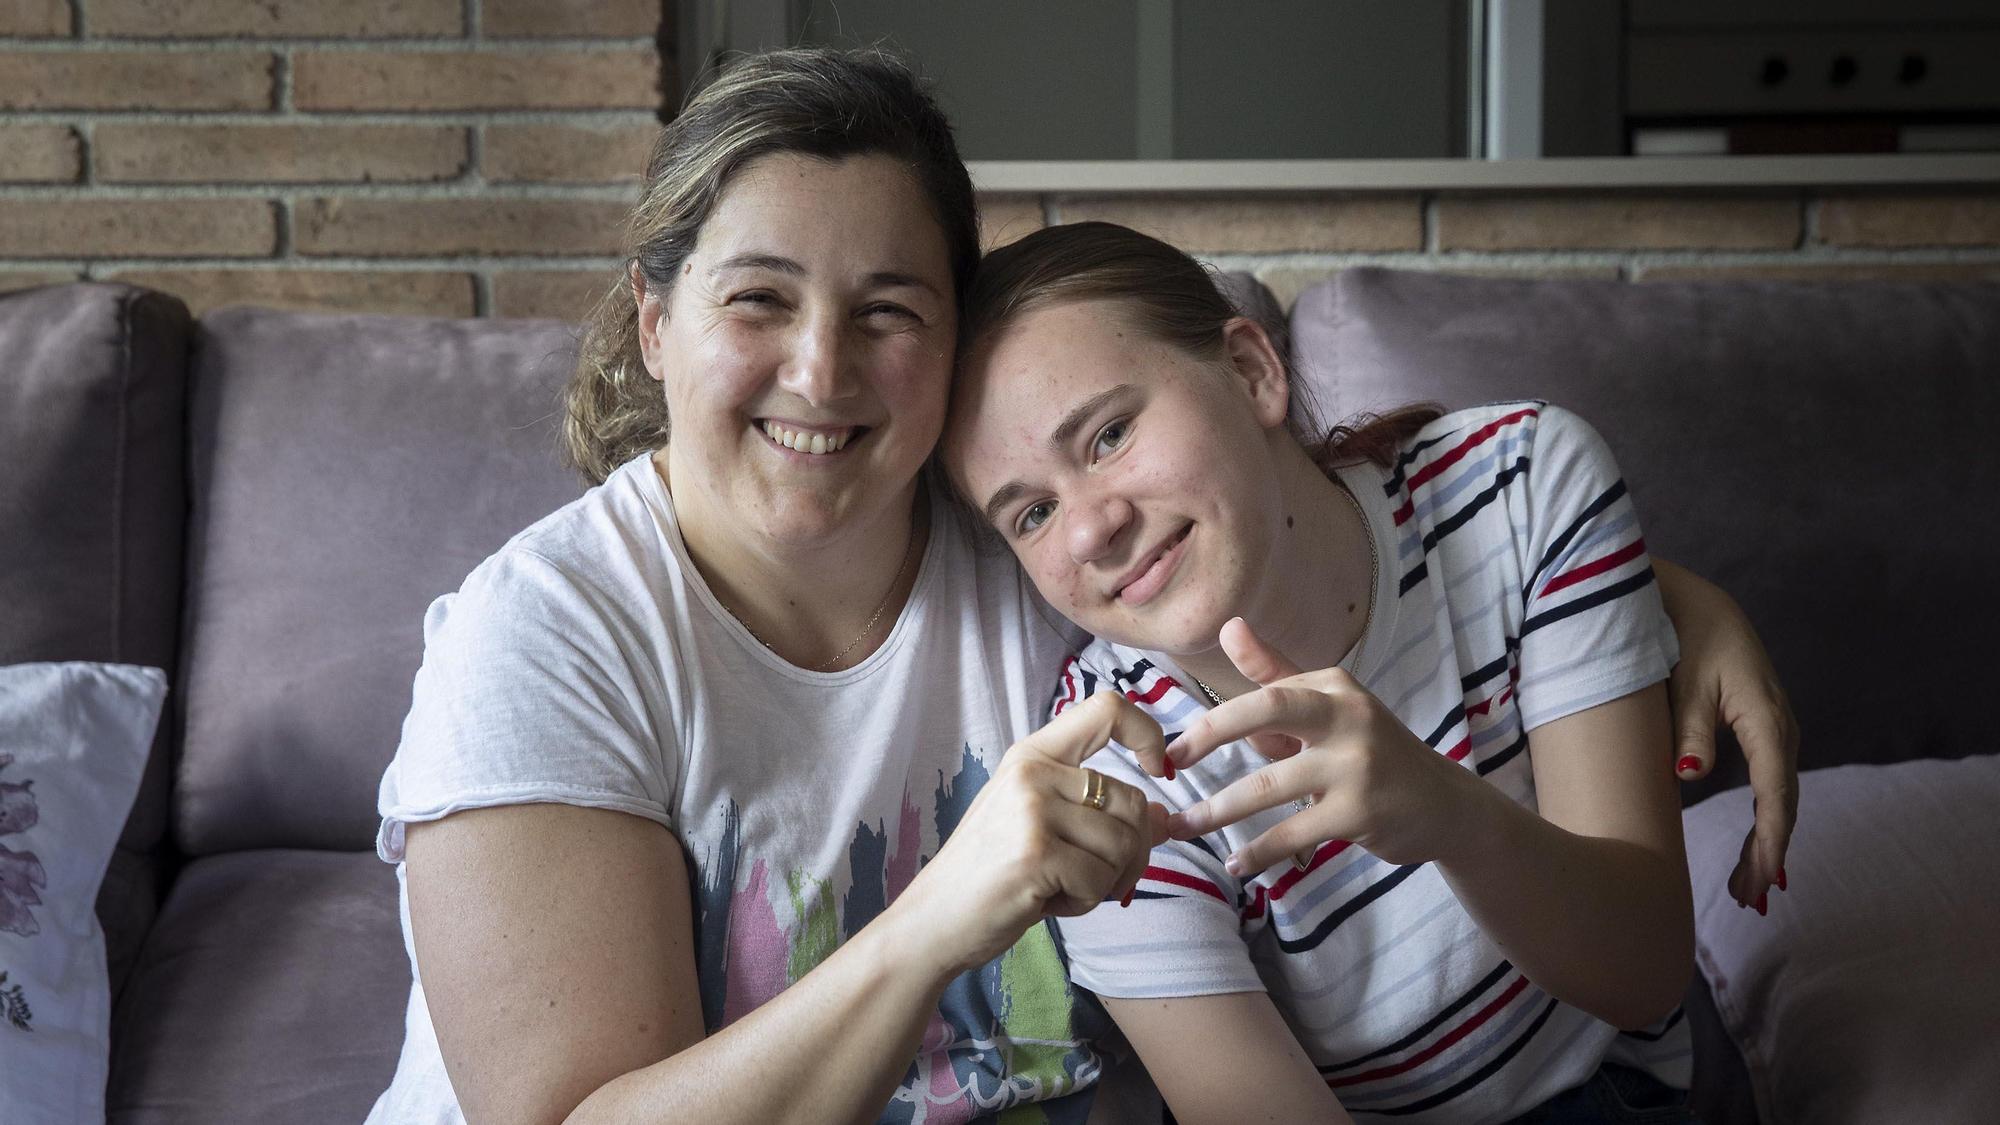 Sabadell 3/06/2022  100 dias de la guerra de Ucrania, entrevista a Nastya y su familia de acogida en Sabadell. En la foto Javi, Laura, Nastya y su hermana Alla (de rojo)  FOTO de FERRAN NADEU